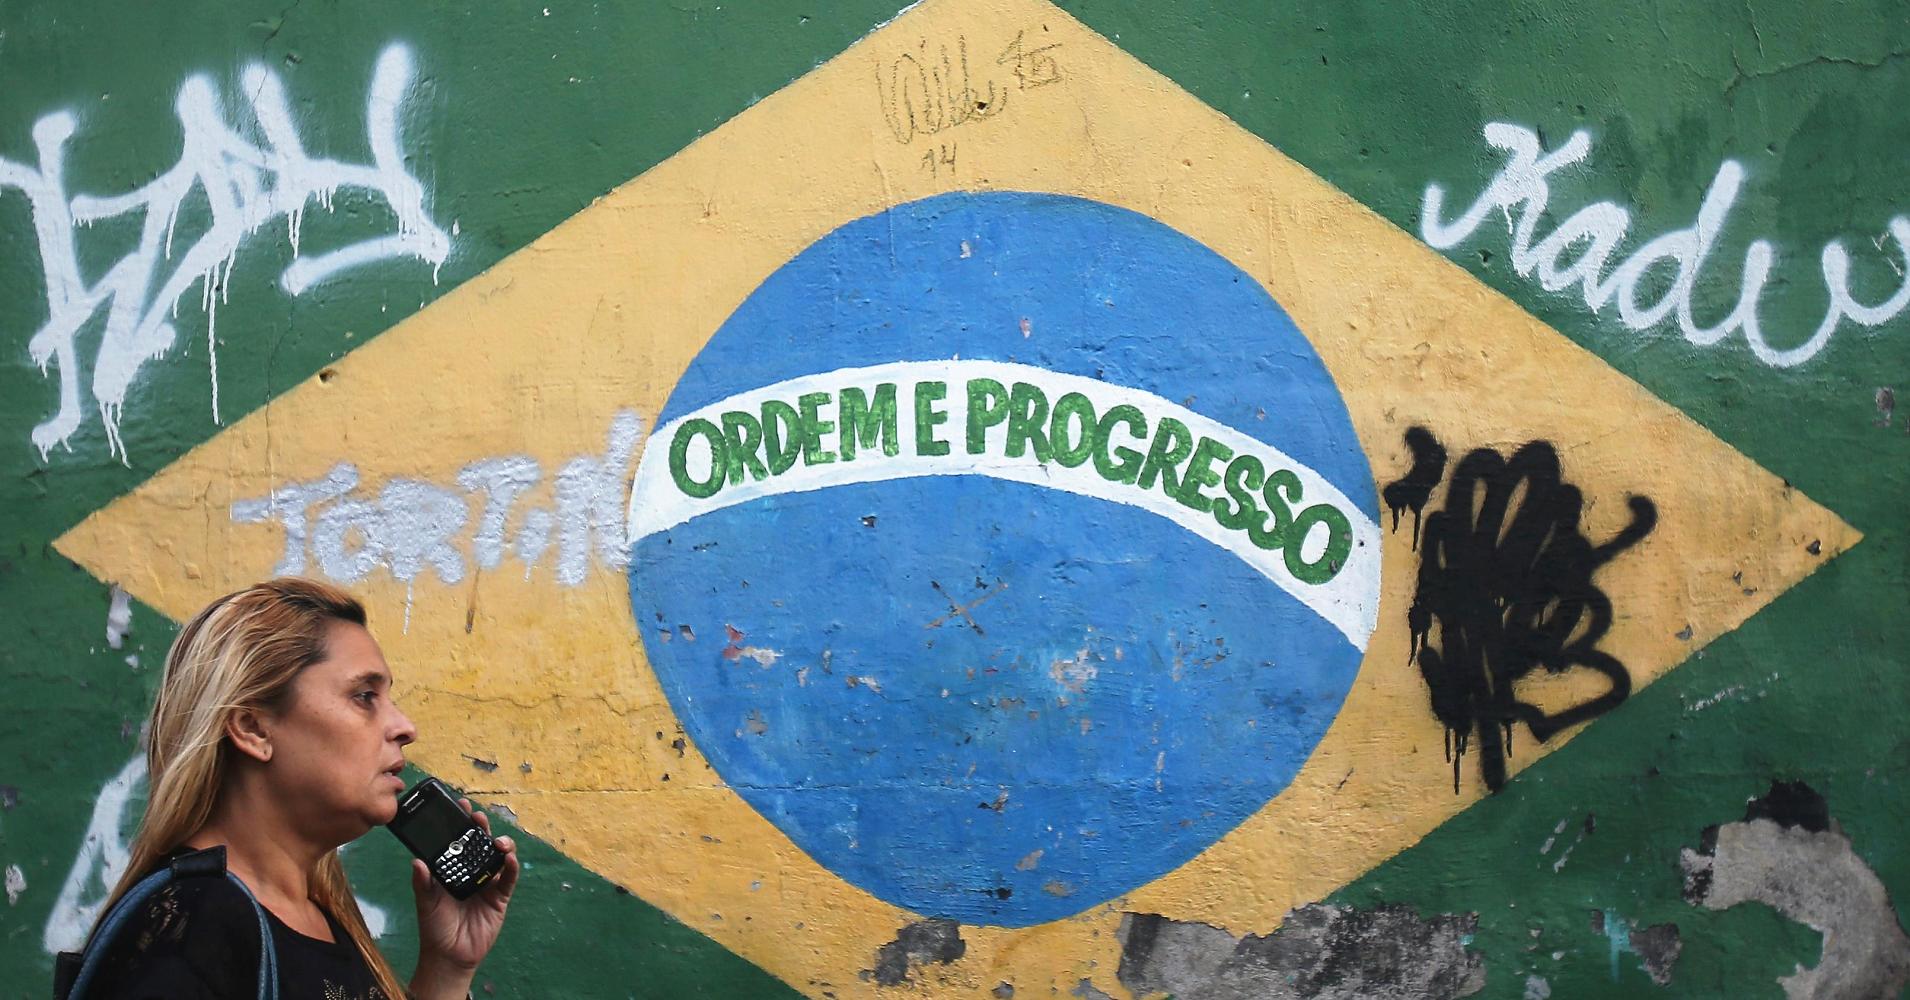 Brazil: New interim President Temer calls for trust